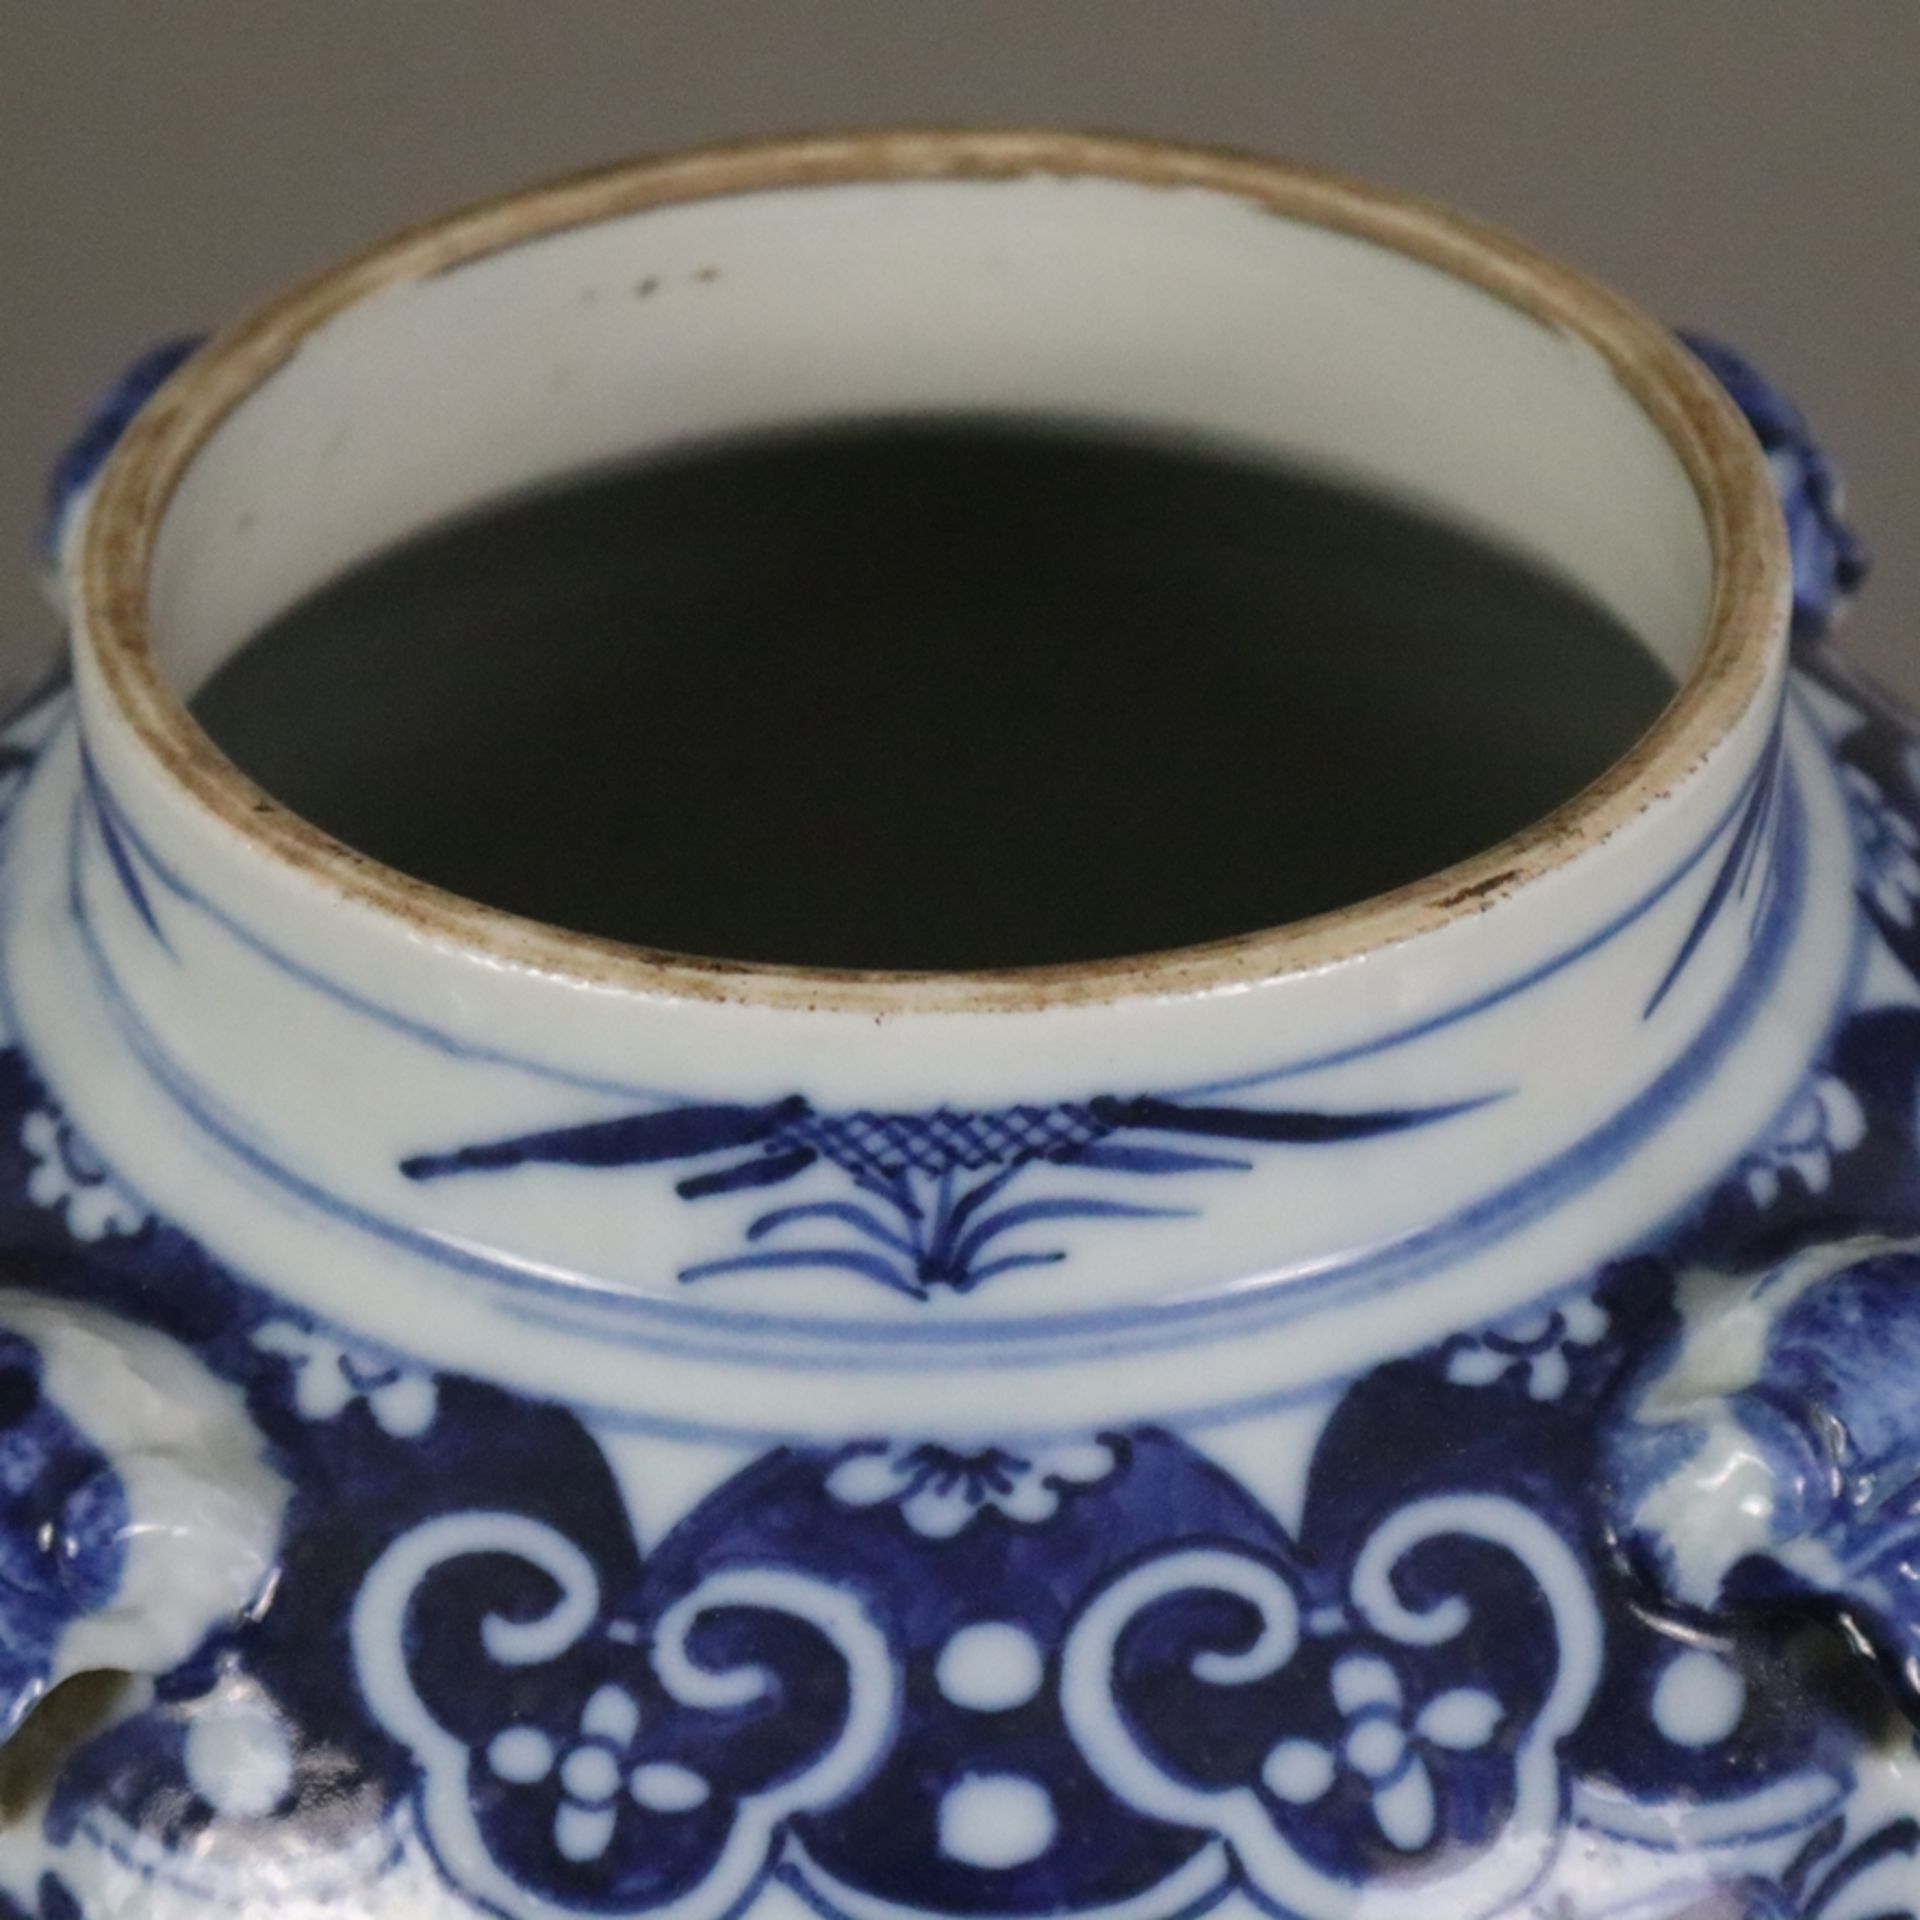 Blau-weiße Balustervase - China, späte Qing-Dynastie, Porzellan, stark gebauchte Wandung mit ausges - Bild 2 aus 9